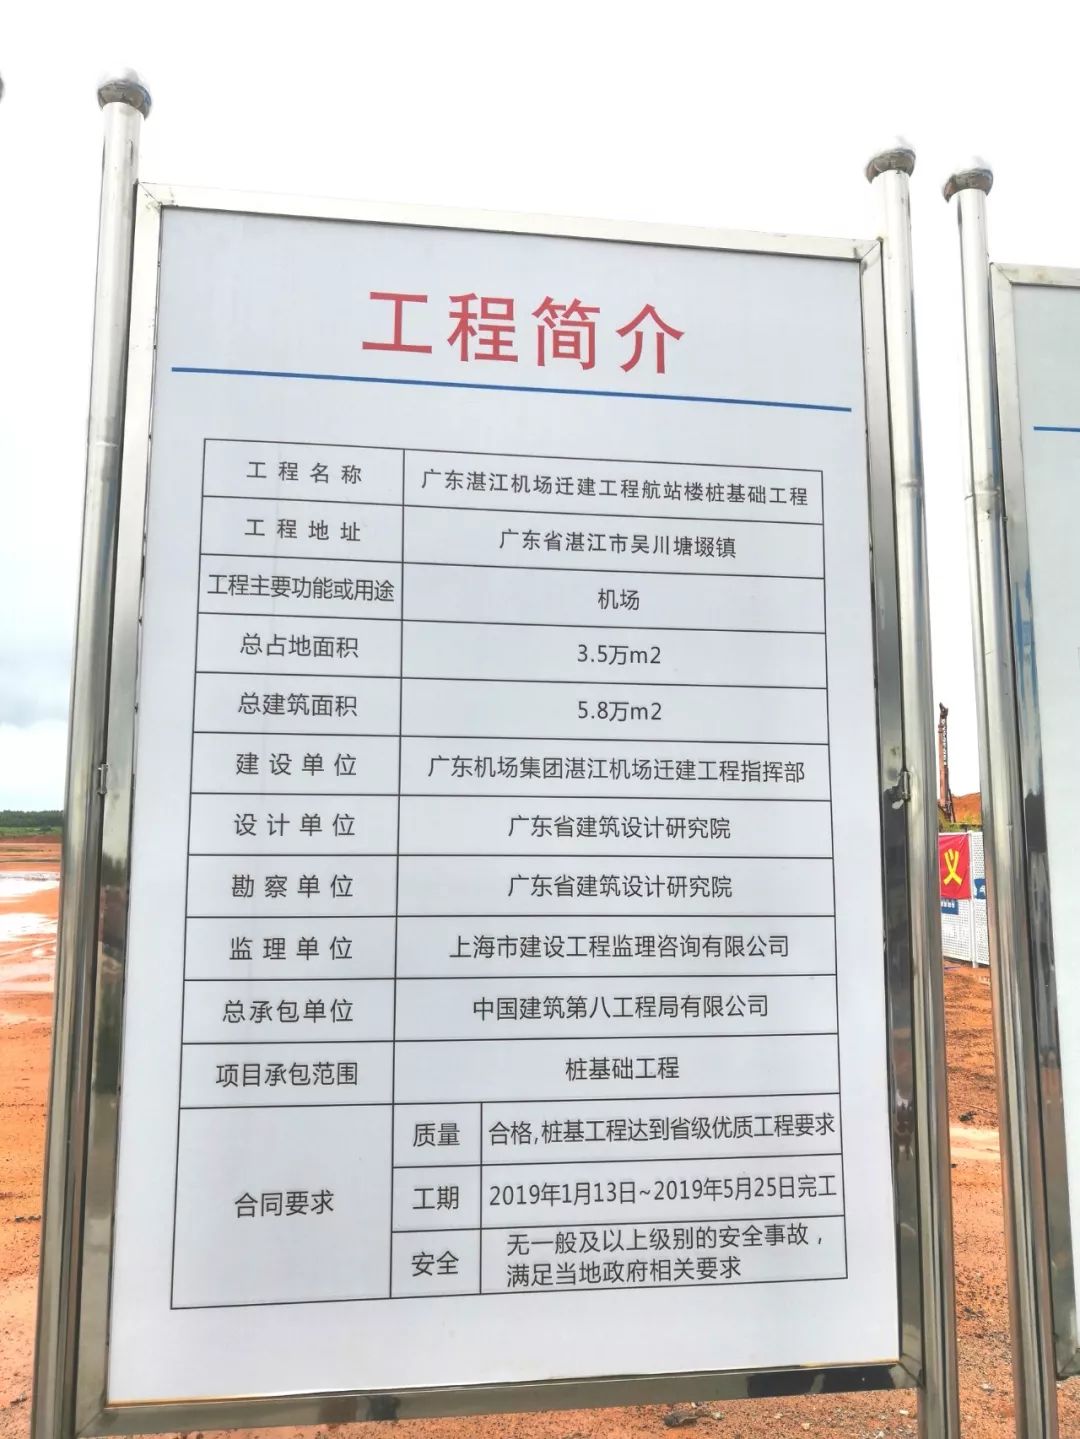 工程简介▼施工现场平面图在湛江机场迁建项目工程现场可以看到壕站